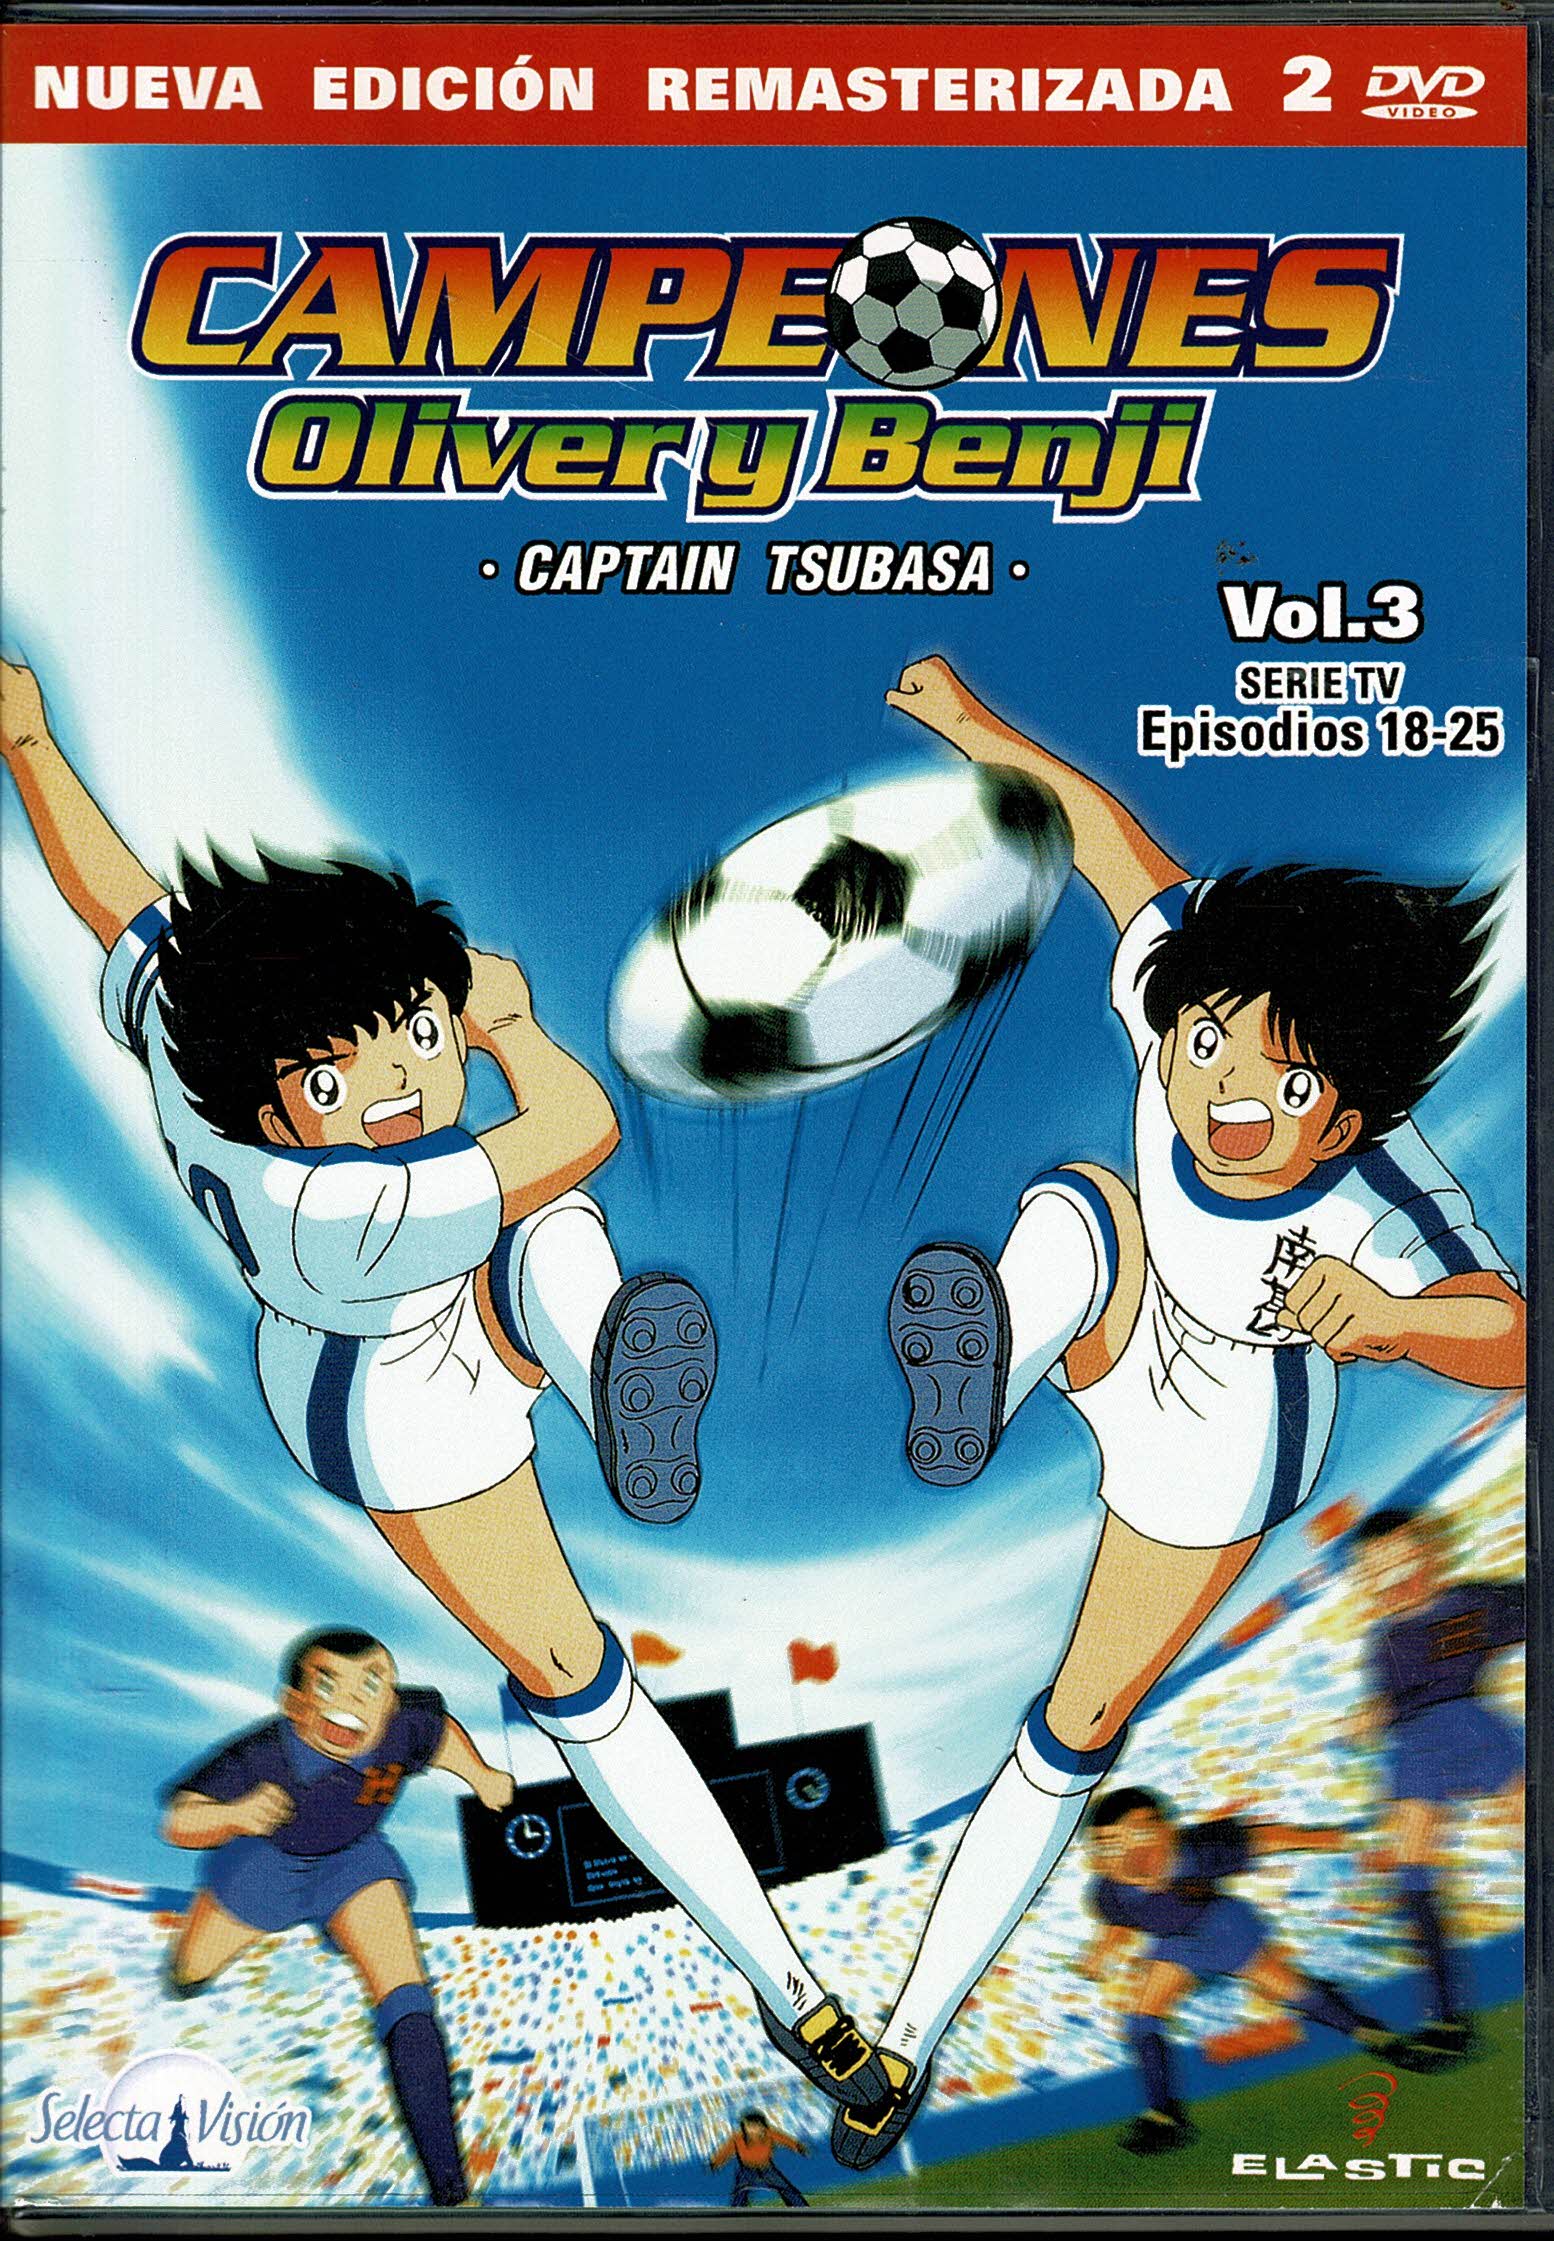 Campeones Oliver y Benji *captain tsubasa* Vol 3  Episodios 18-25   2 dvd